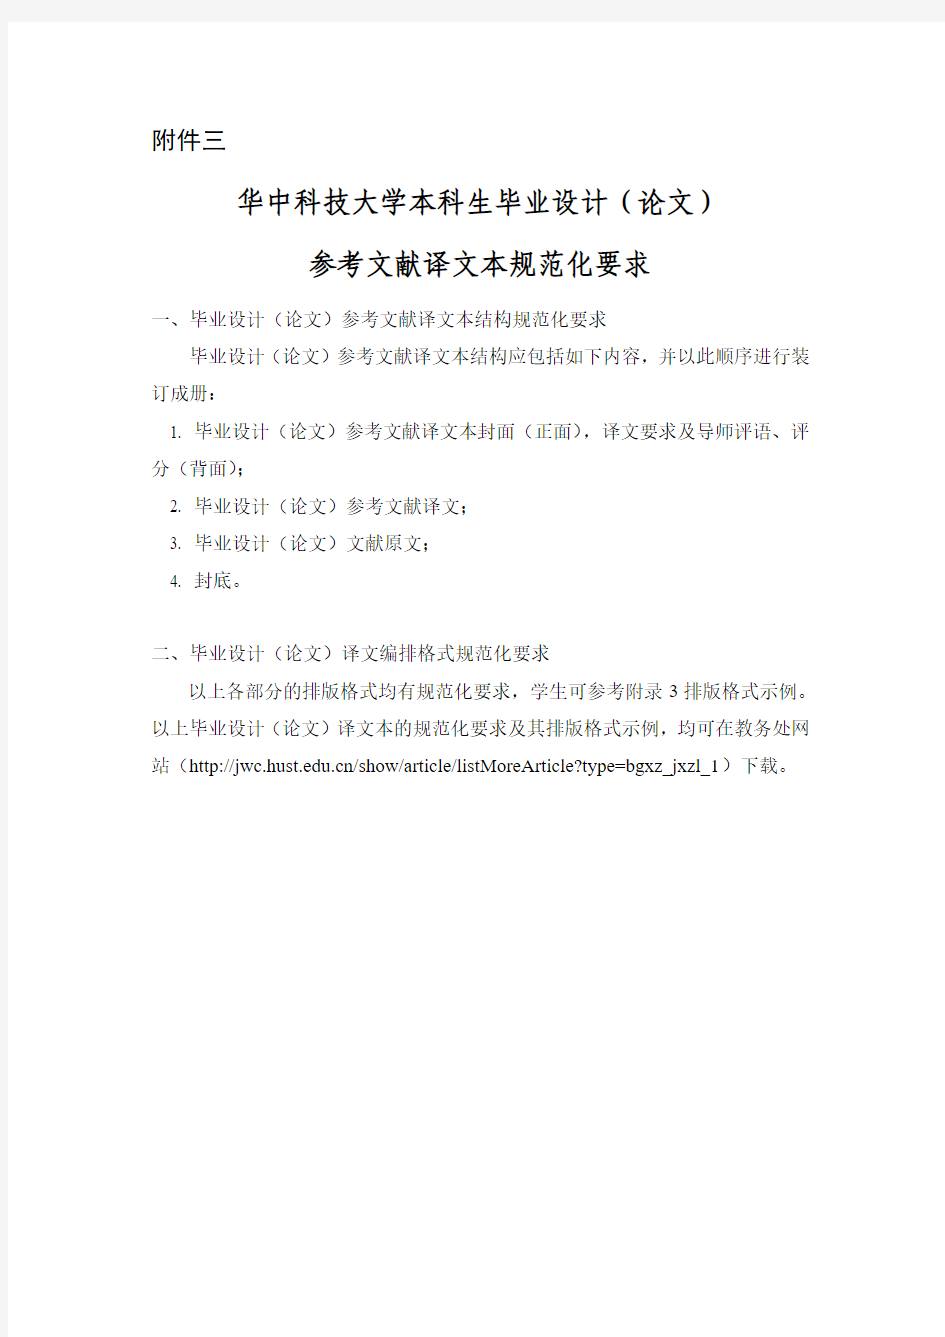 华中科技大学本科生毕业设计(论文)参考文献译文本规范化要求(20150316)